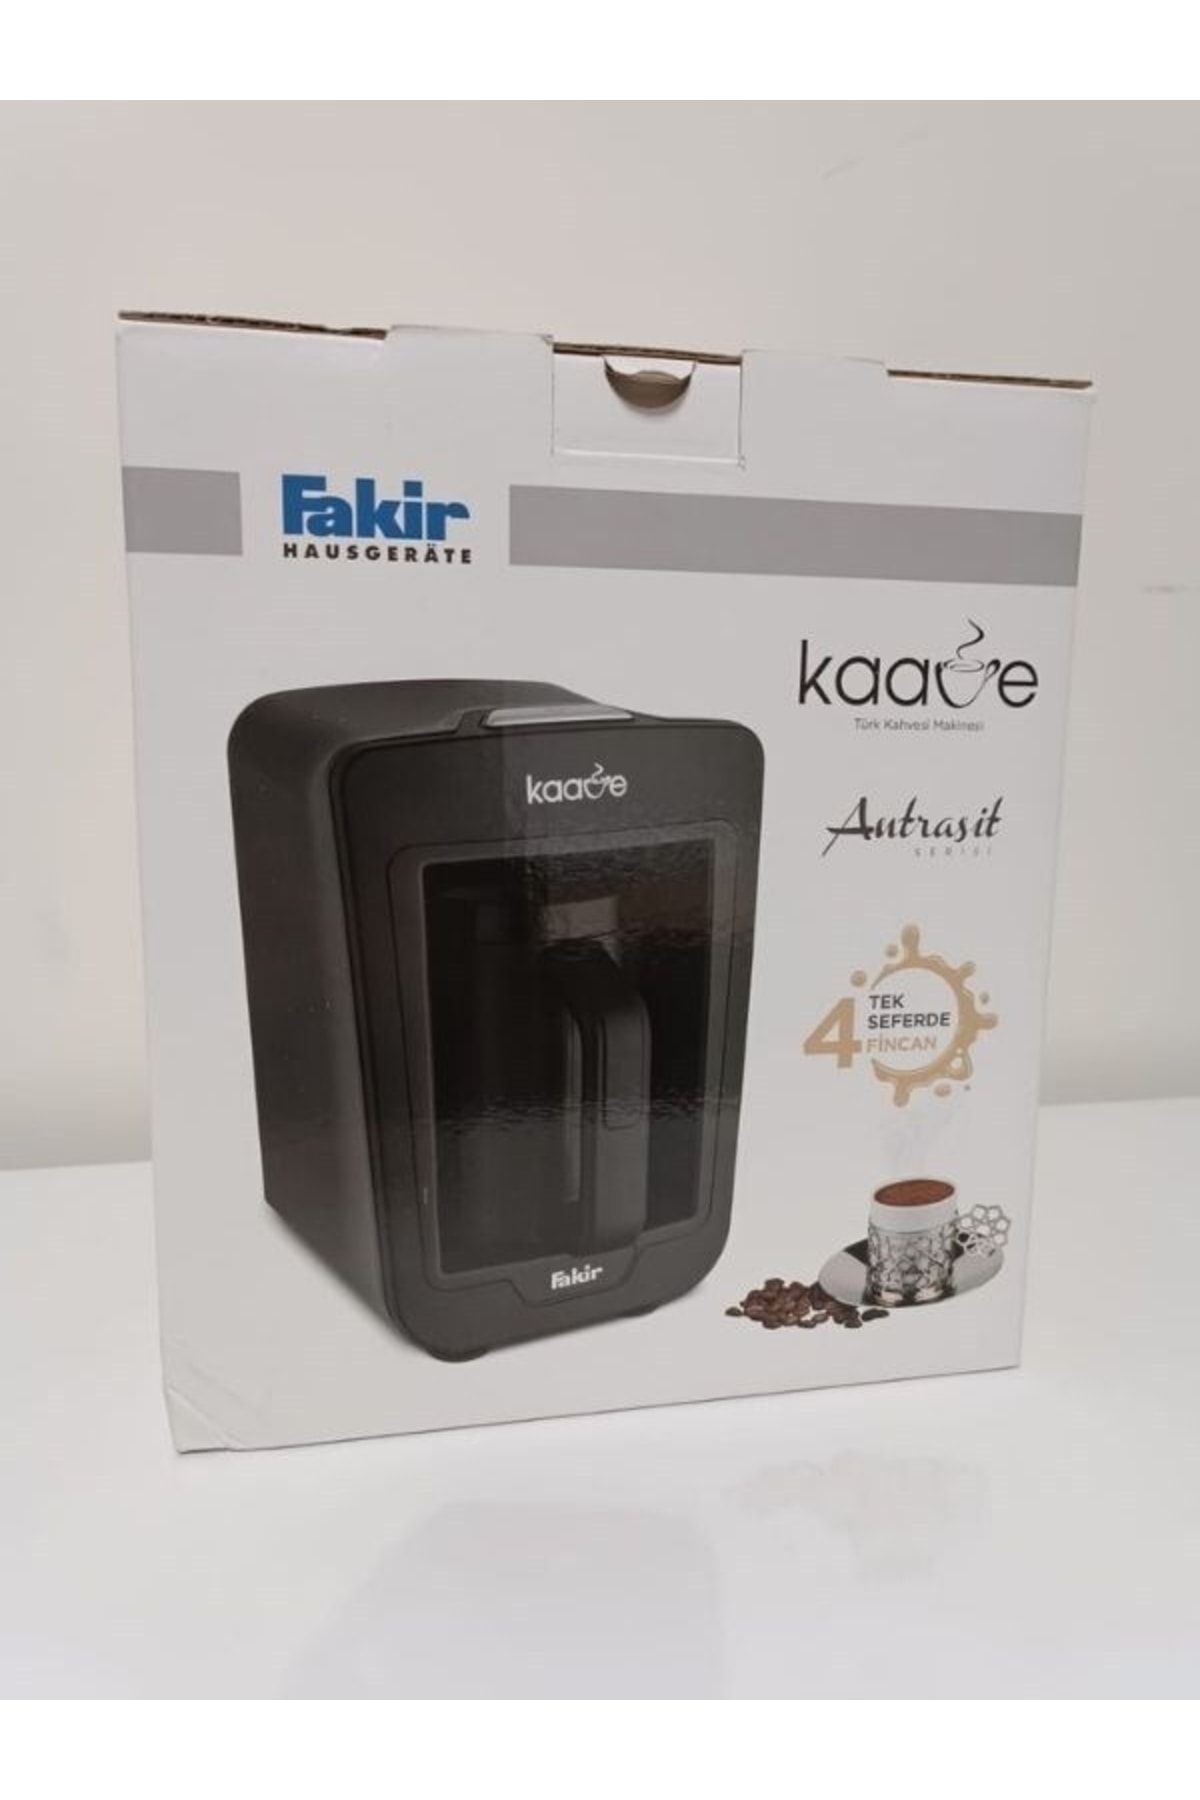 Fakir Kaave Türk Kahve Makinesi Antrasit